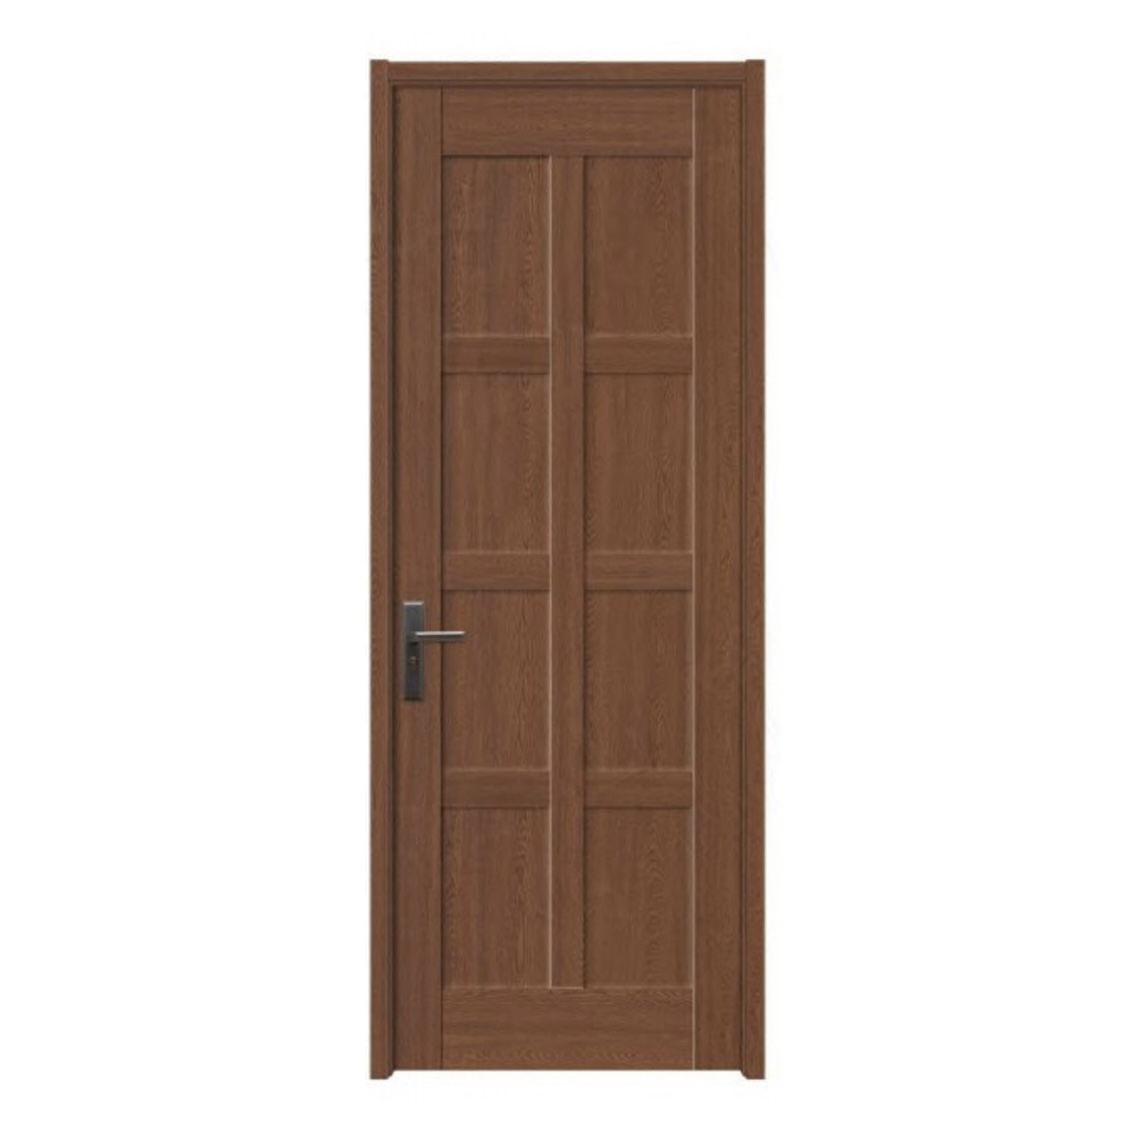 Wpc Outdoor Doors Factories Bedroom Finished Bulk Buy ZL005 Zonle 5